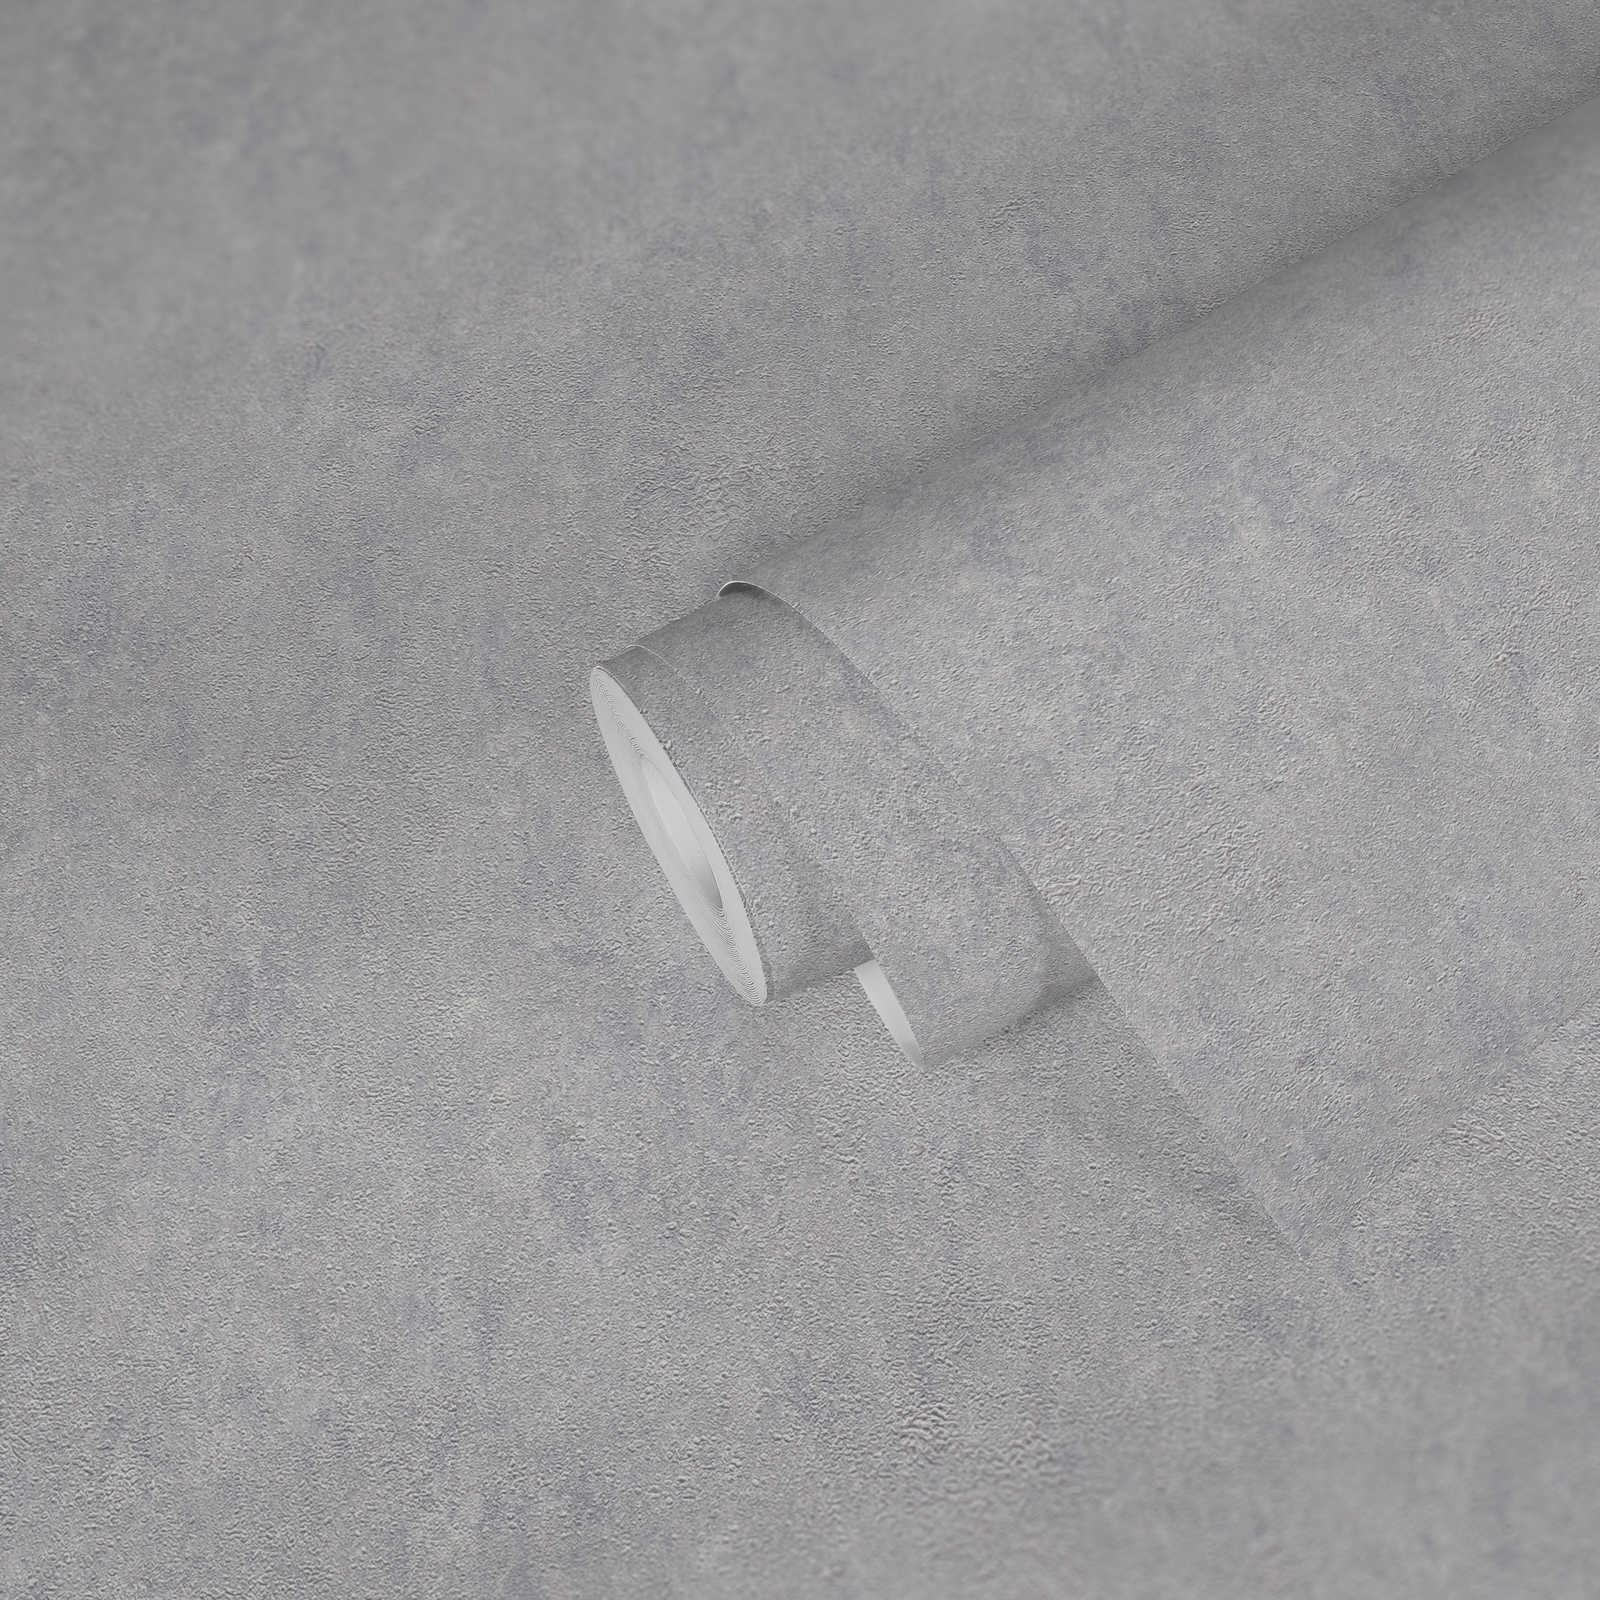             papier peint en papier structuré uni brillant avec effet métallisé - gris, argenté
        